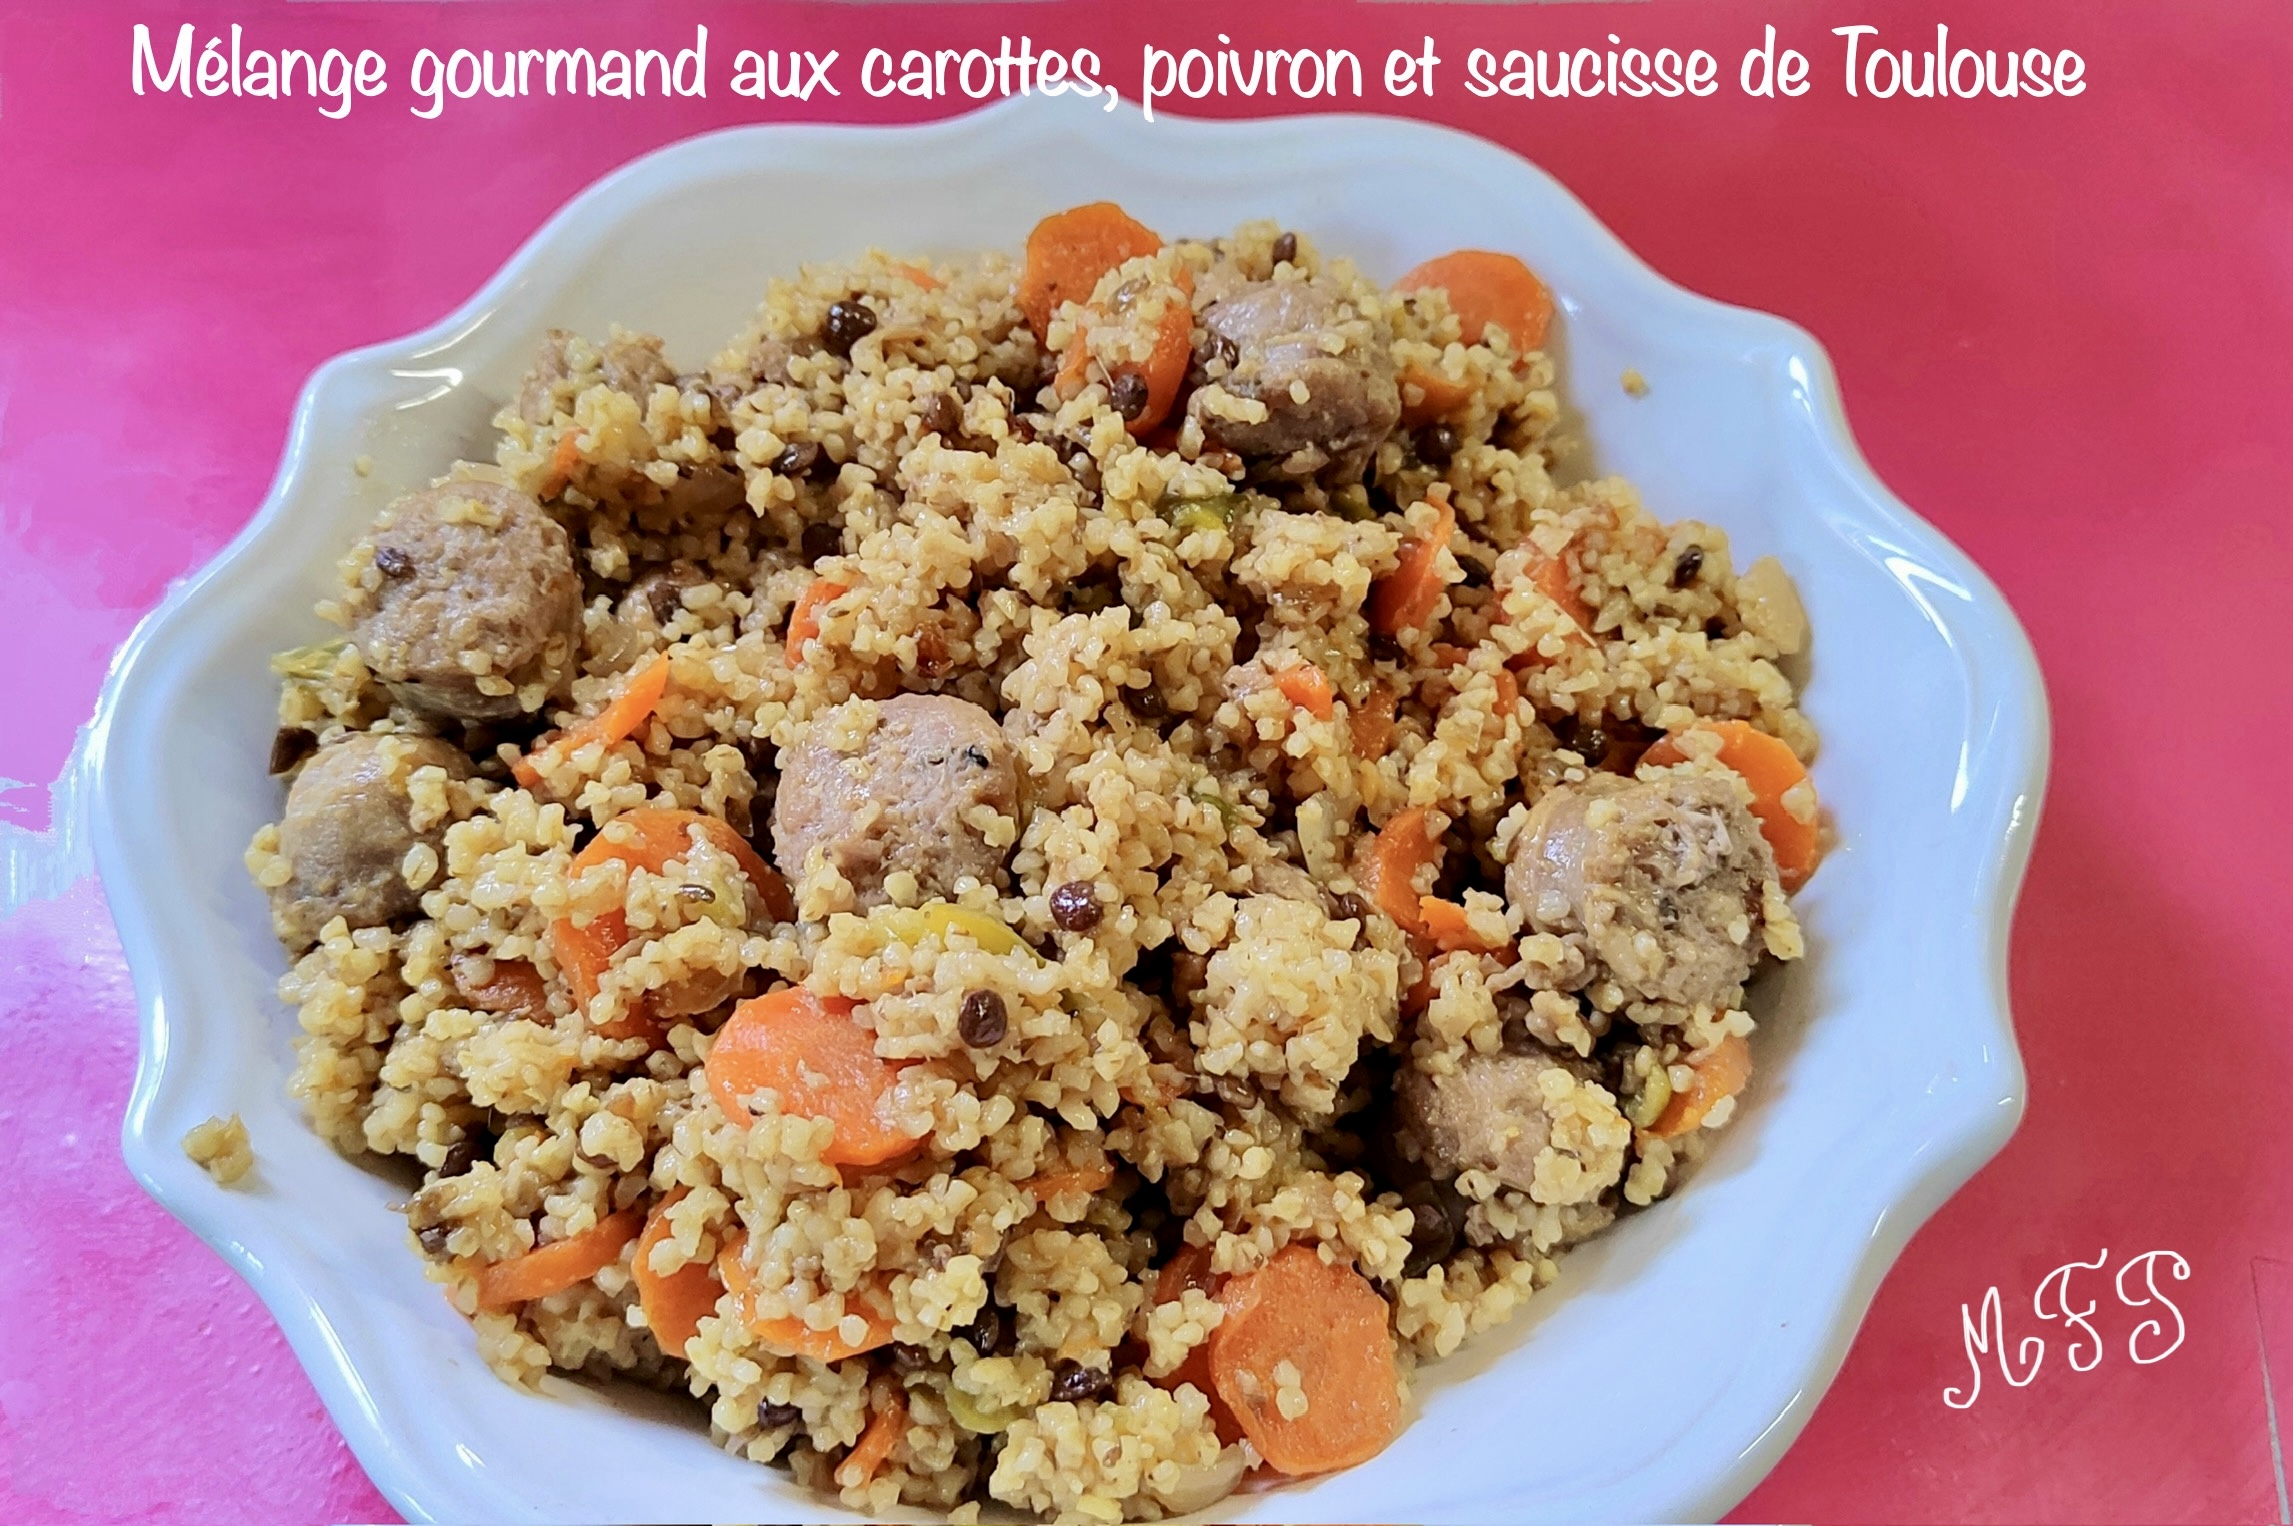 Mélange gourmand aux carottes, poivron et saucisse de Toulouse